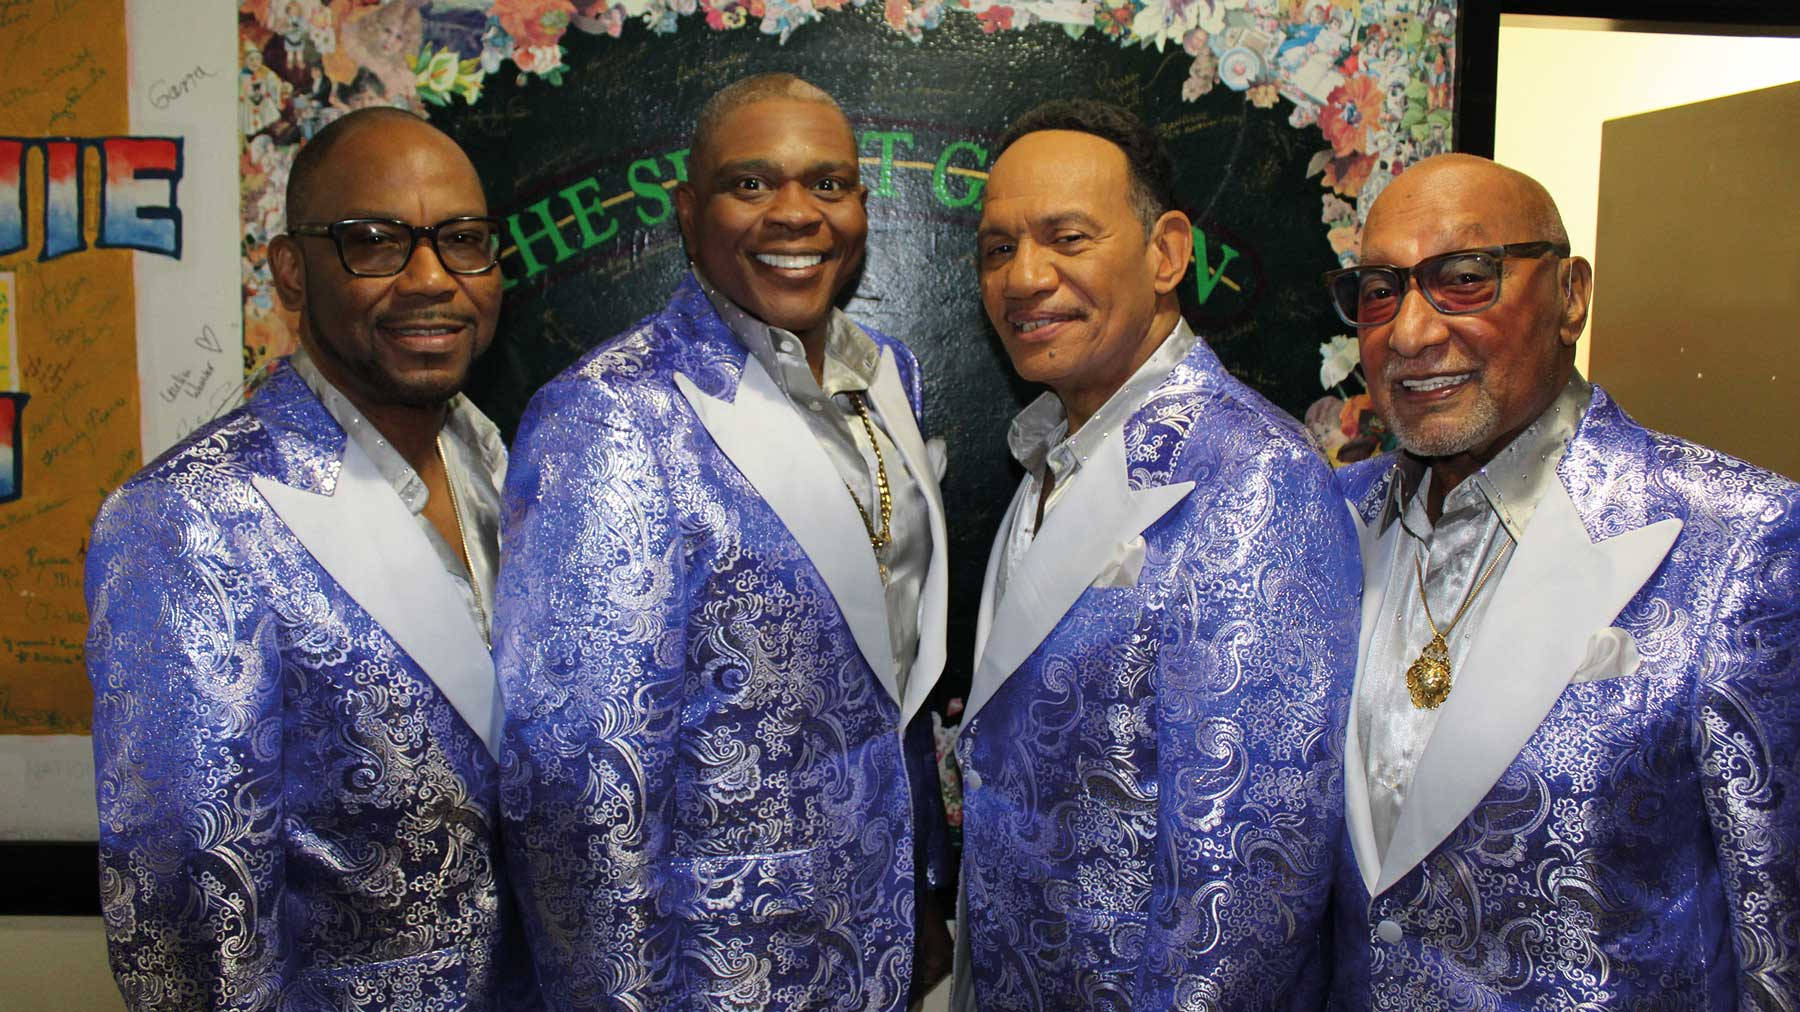 Amerikanskvokalkvartett Motown Legender Four Tops. Wallpaper